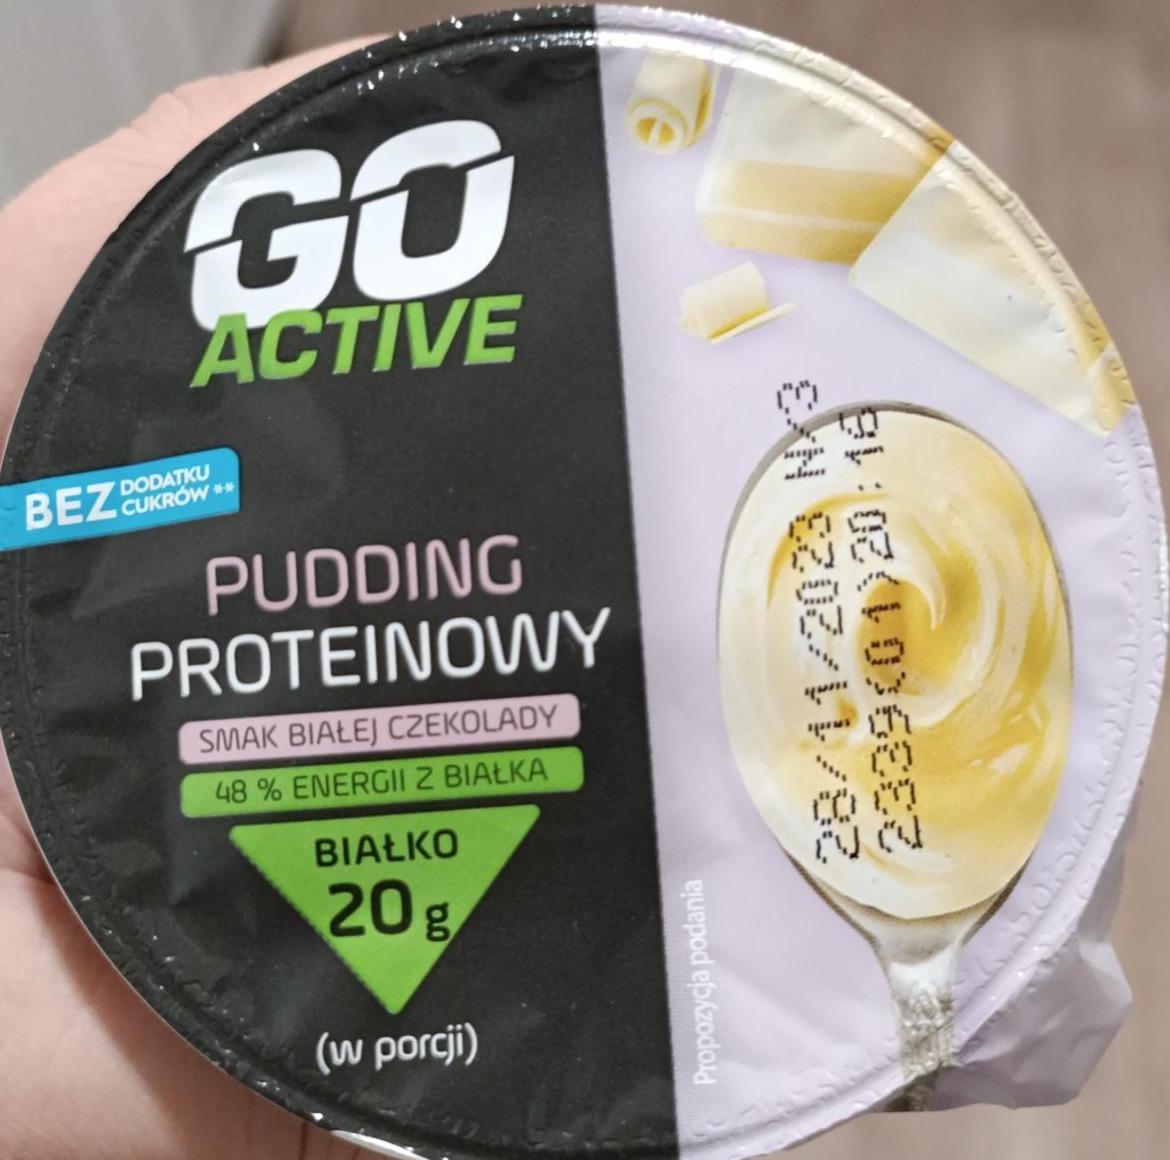 Fotografie - Pudding proteinowy smak białej czekolady Go Active